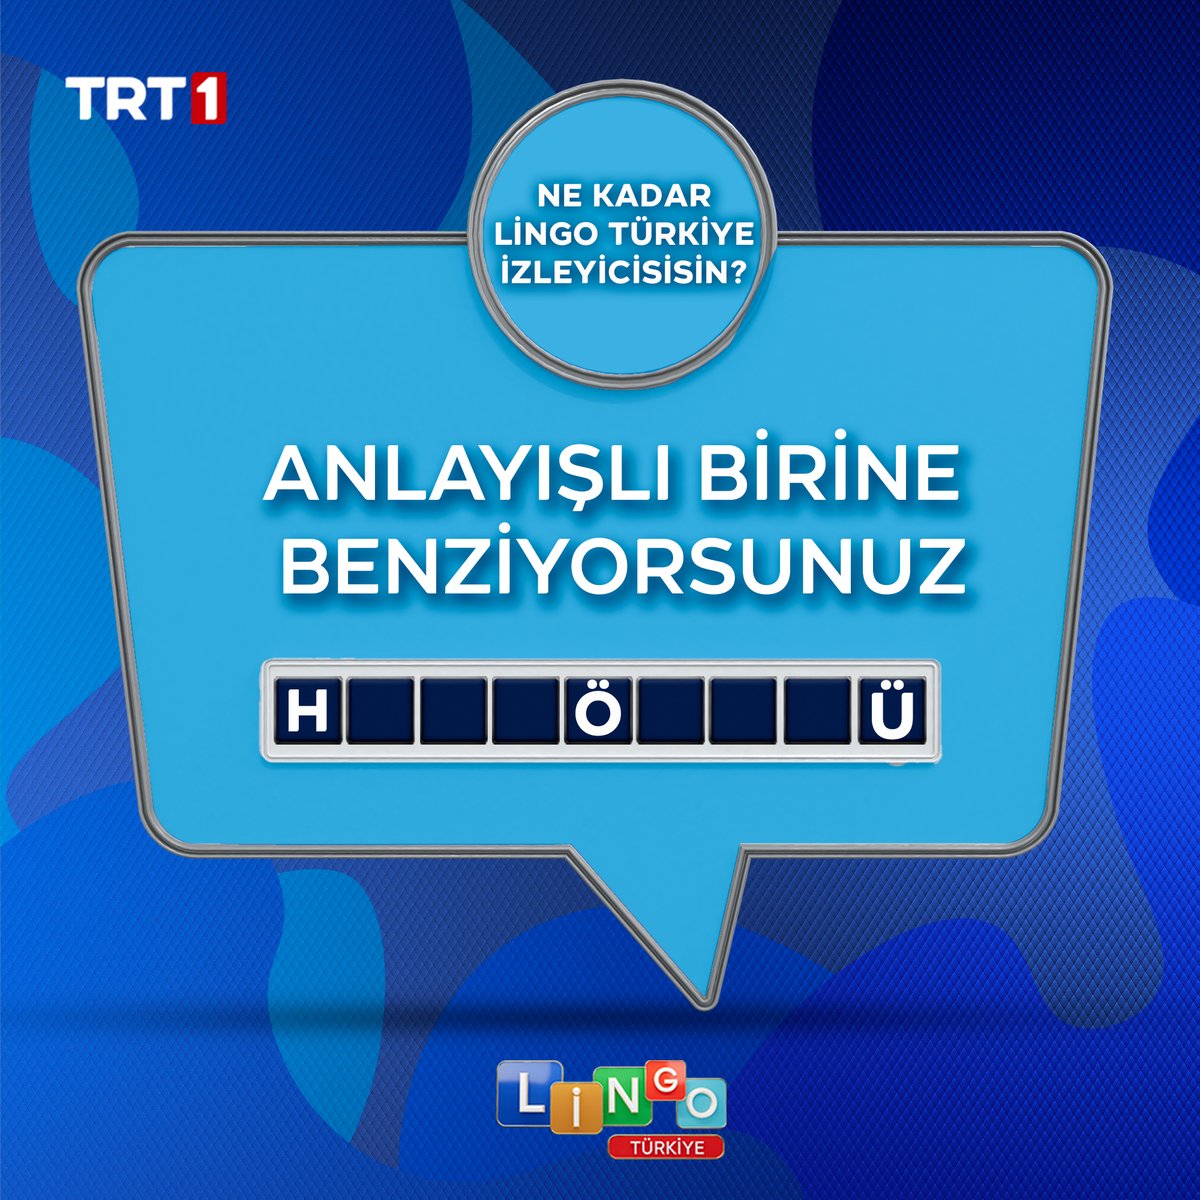 Cevabı hatırlayanlar burada mı? ✨ #LingoTürkiye hafta içi her gün 17.45’te @trt1’de 📺